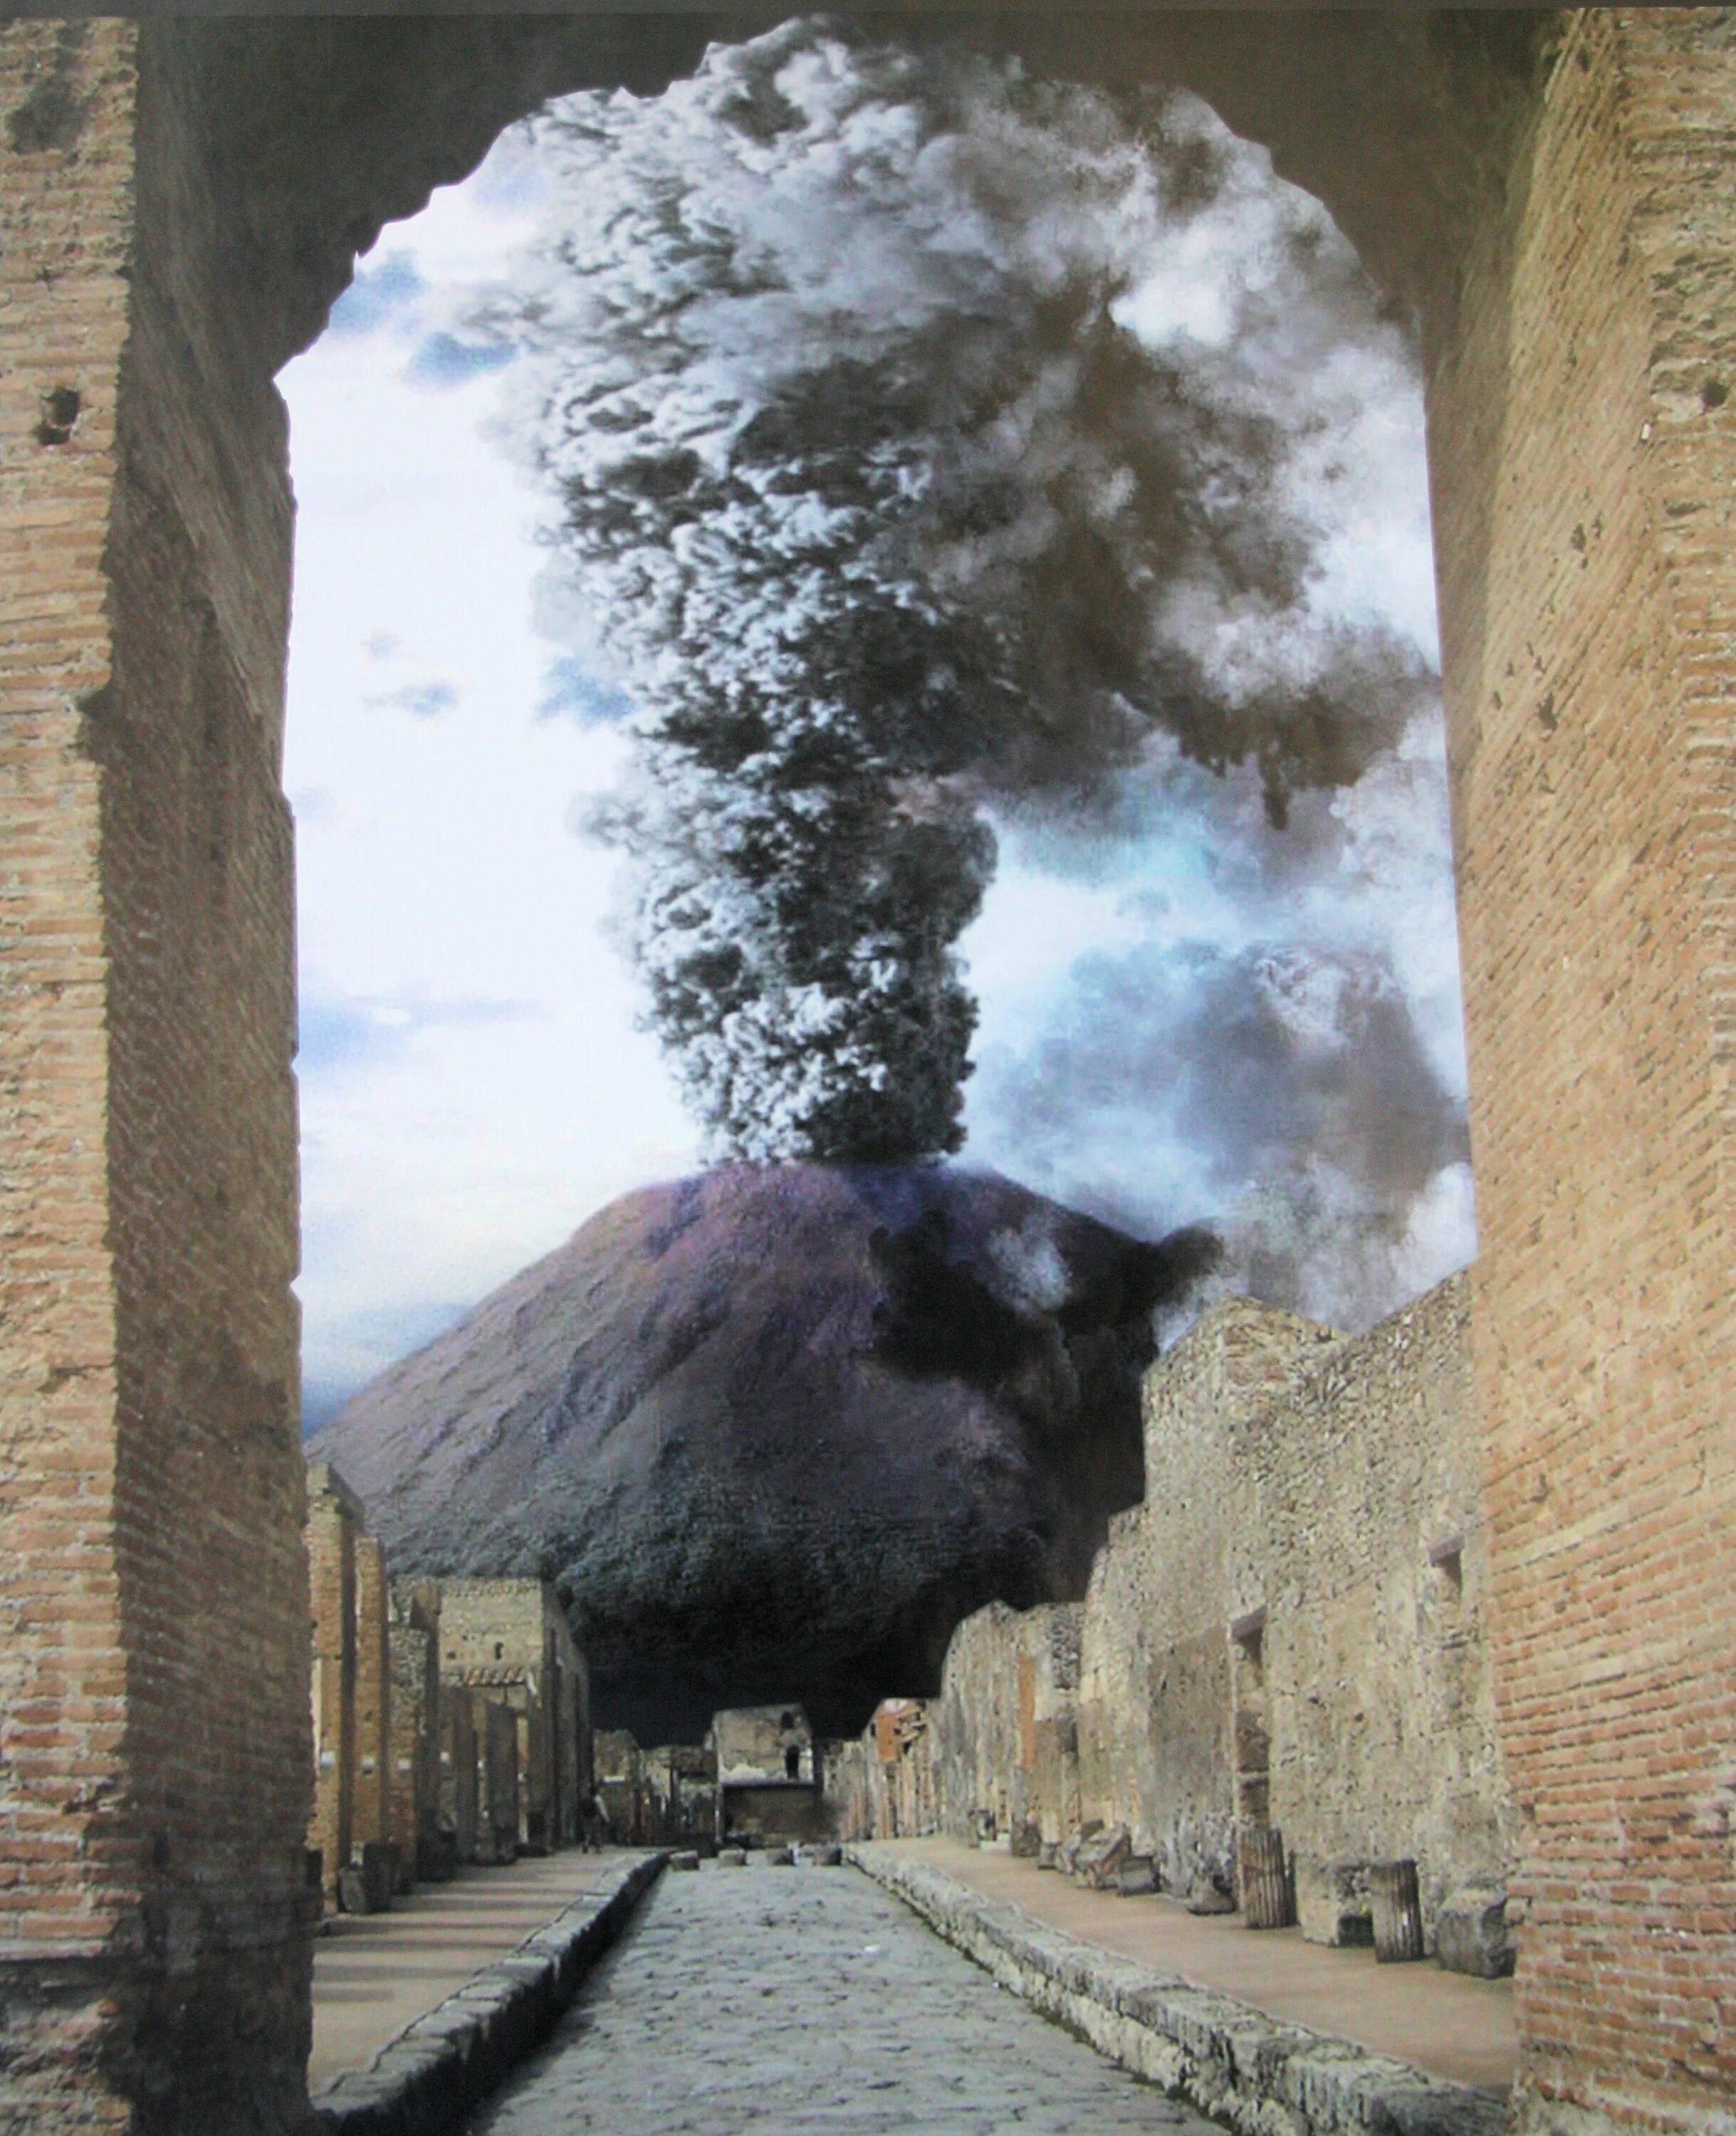 Вулкан Везувий Помпеи. Извержение Везувия Помпеи. В 79 Г. извержение вулкана Везувий в Италии. Извержение вулкана уничтожило город